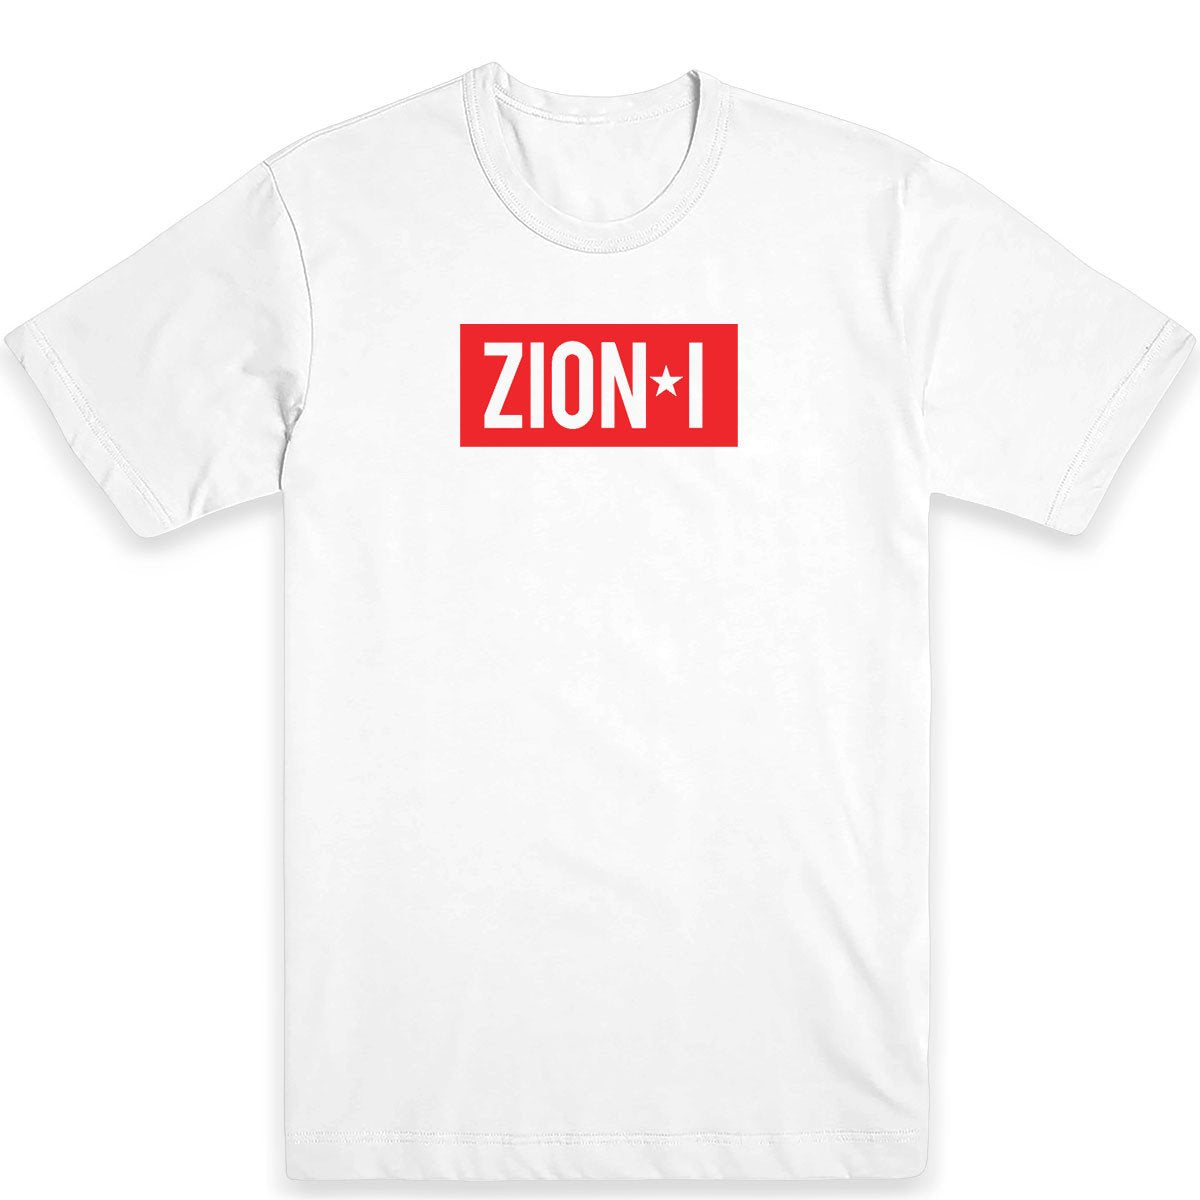 Zion I Logo Tee